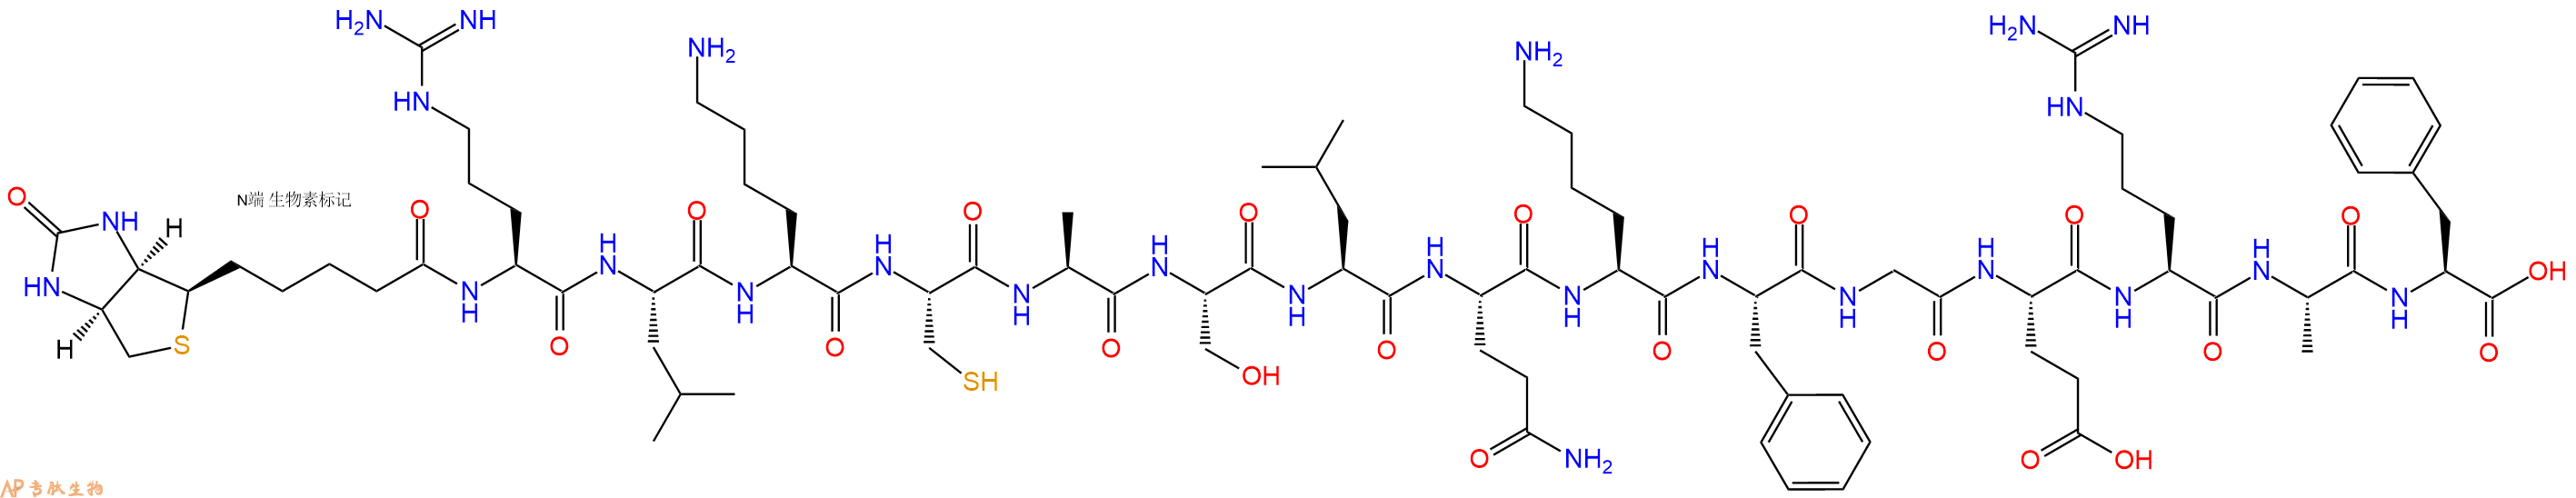 专肽生物产品Biotin-Arg-Leu-Lys-Cys-Ala-Ser-Leu-Gln-Lys-Phe-Gly